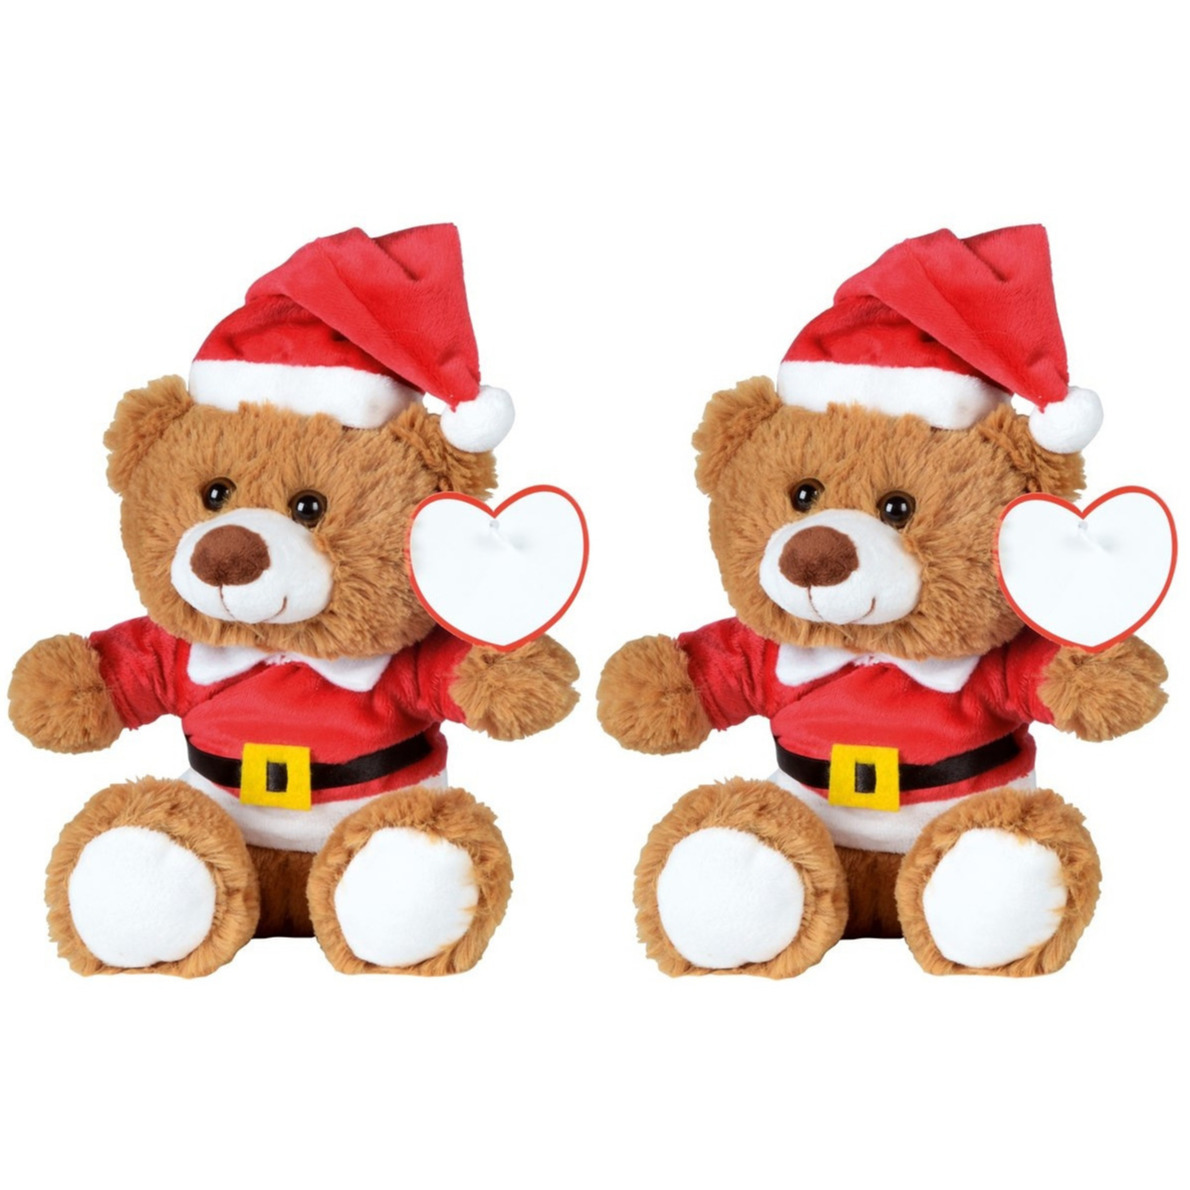 2x Kerst knuffel pluche beertjes bruin zittend 18 x 19 cm speelgoed